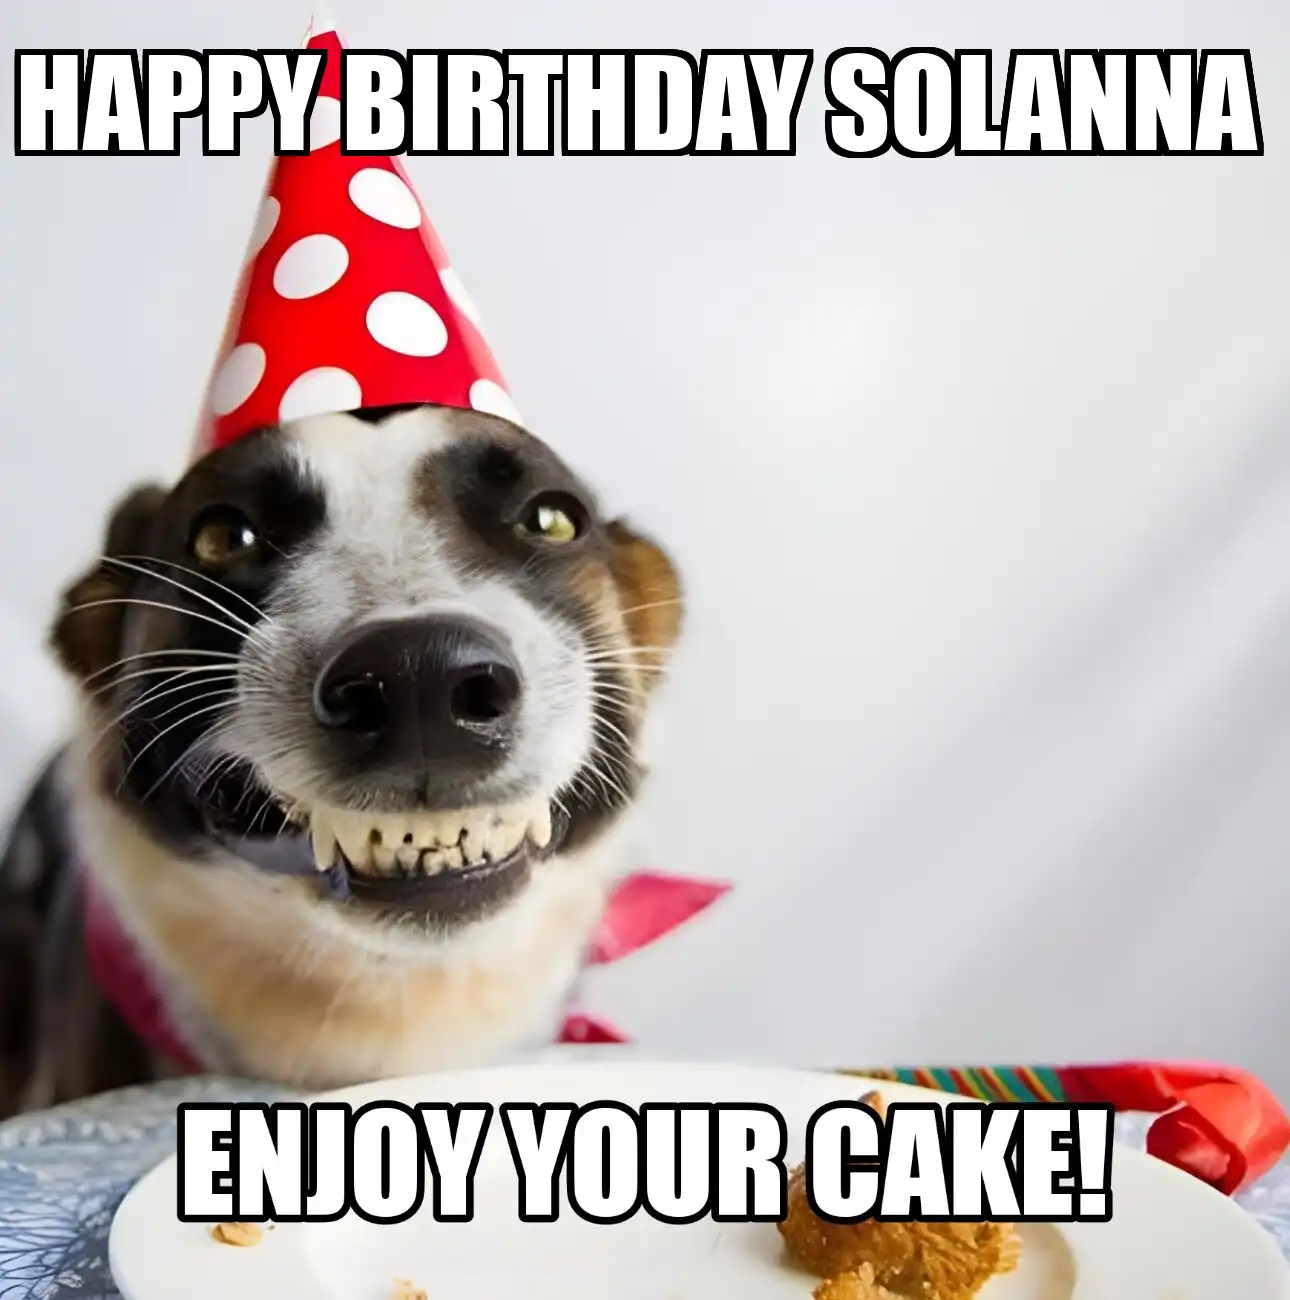 Happy Birthday Solanna Enjoy Your Cake Dog Meme